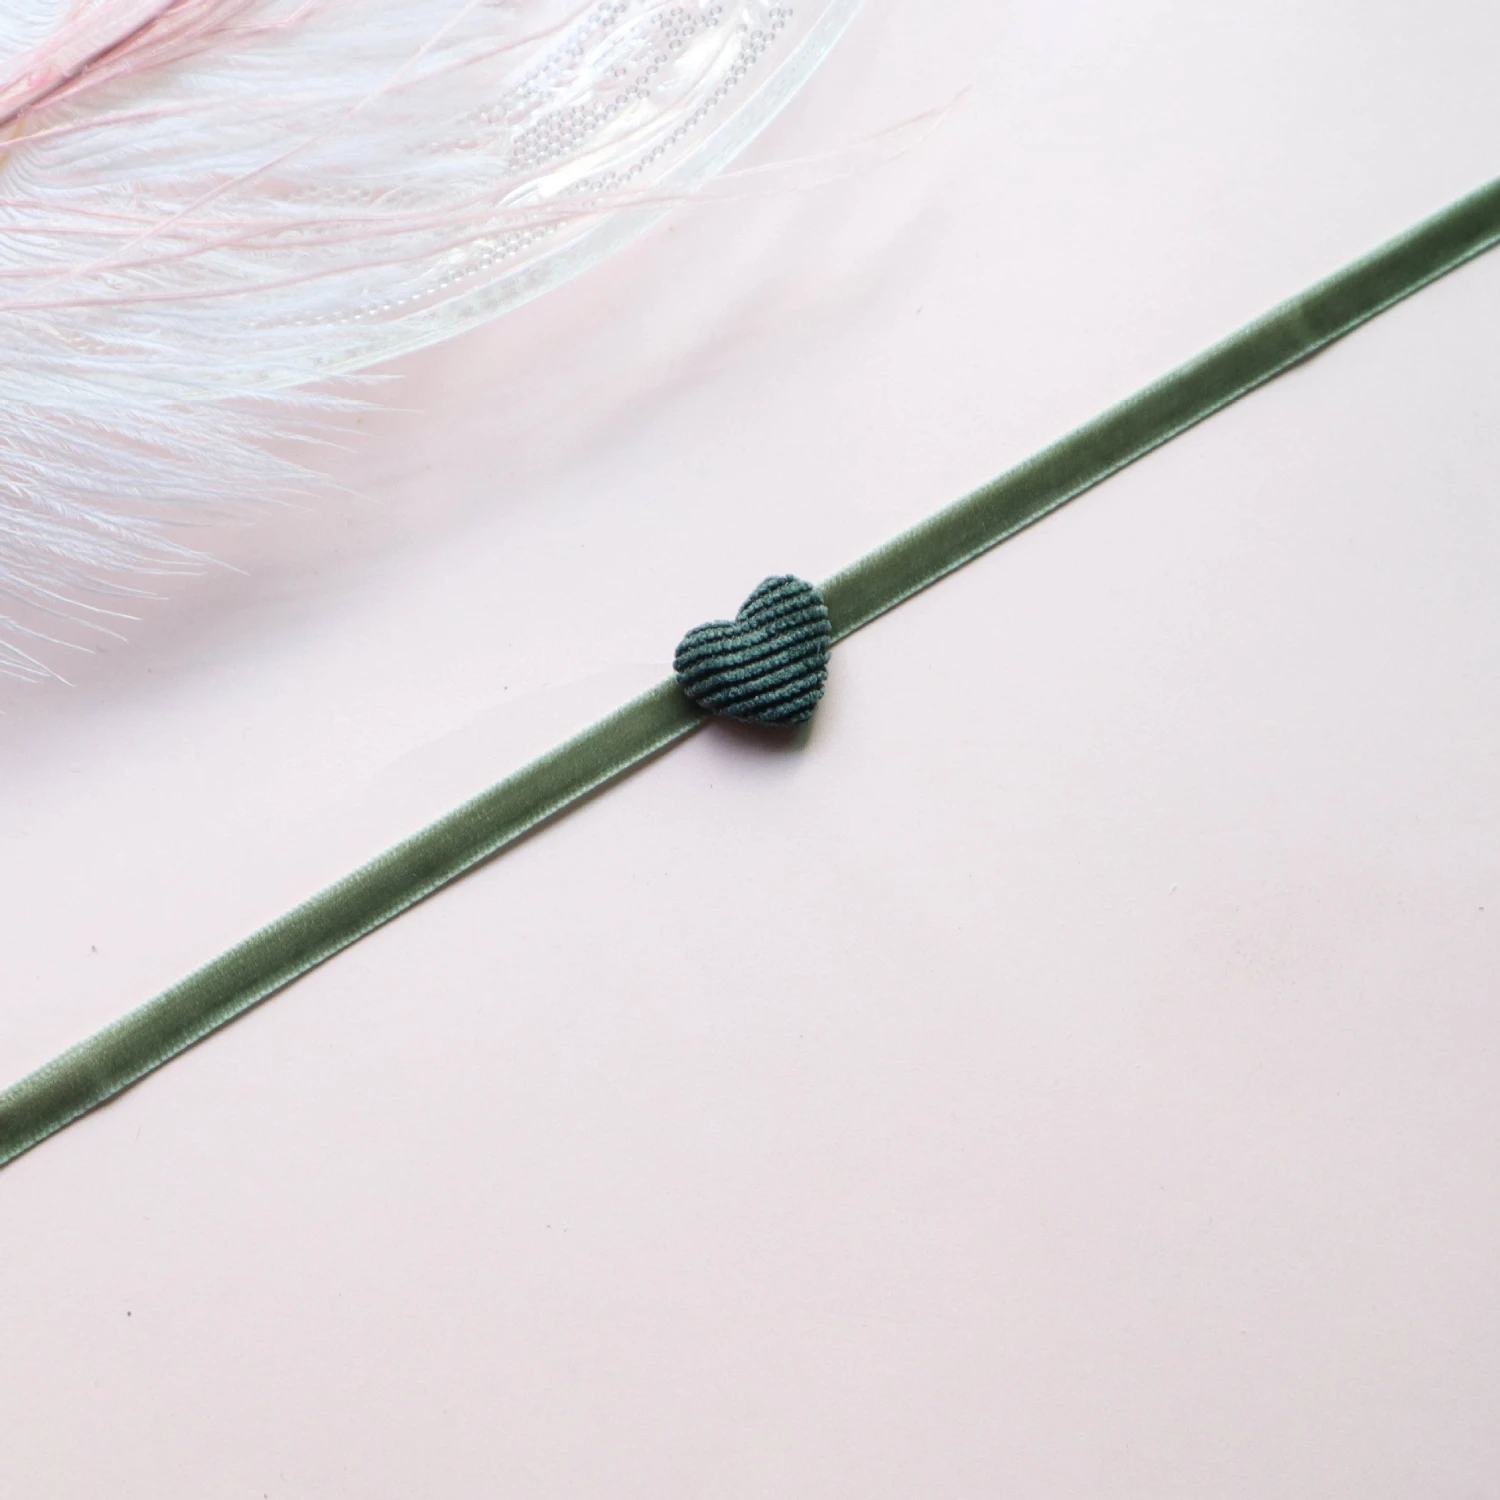 Япония и Корея цвет много-Стиль Кружева Короткая Цепочка на ключицы воротник ожерелье для женщин ювелирные изделия оптом - Окраска металла: 17